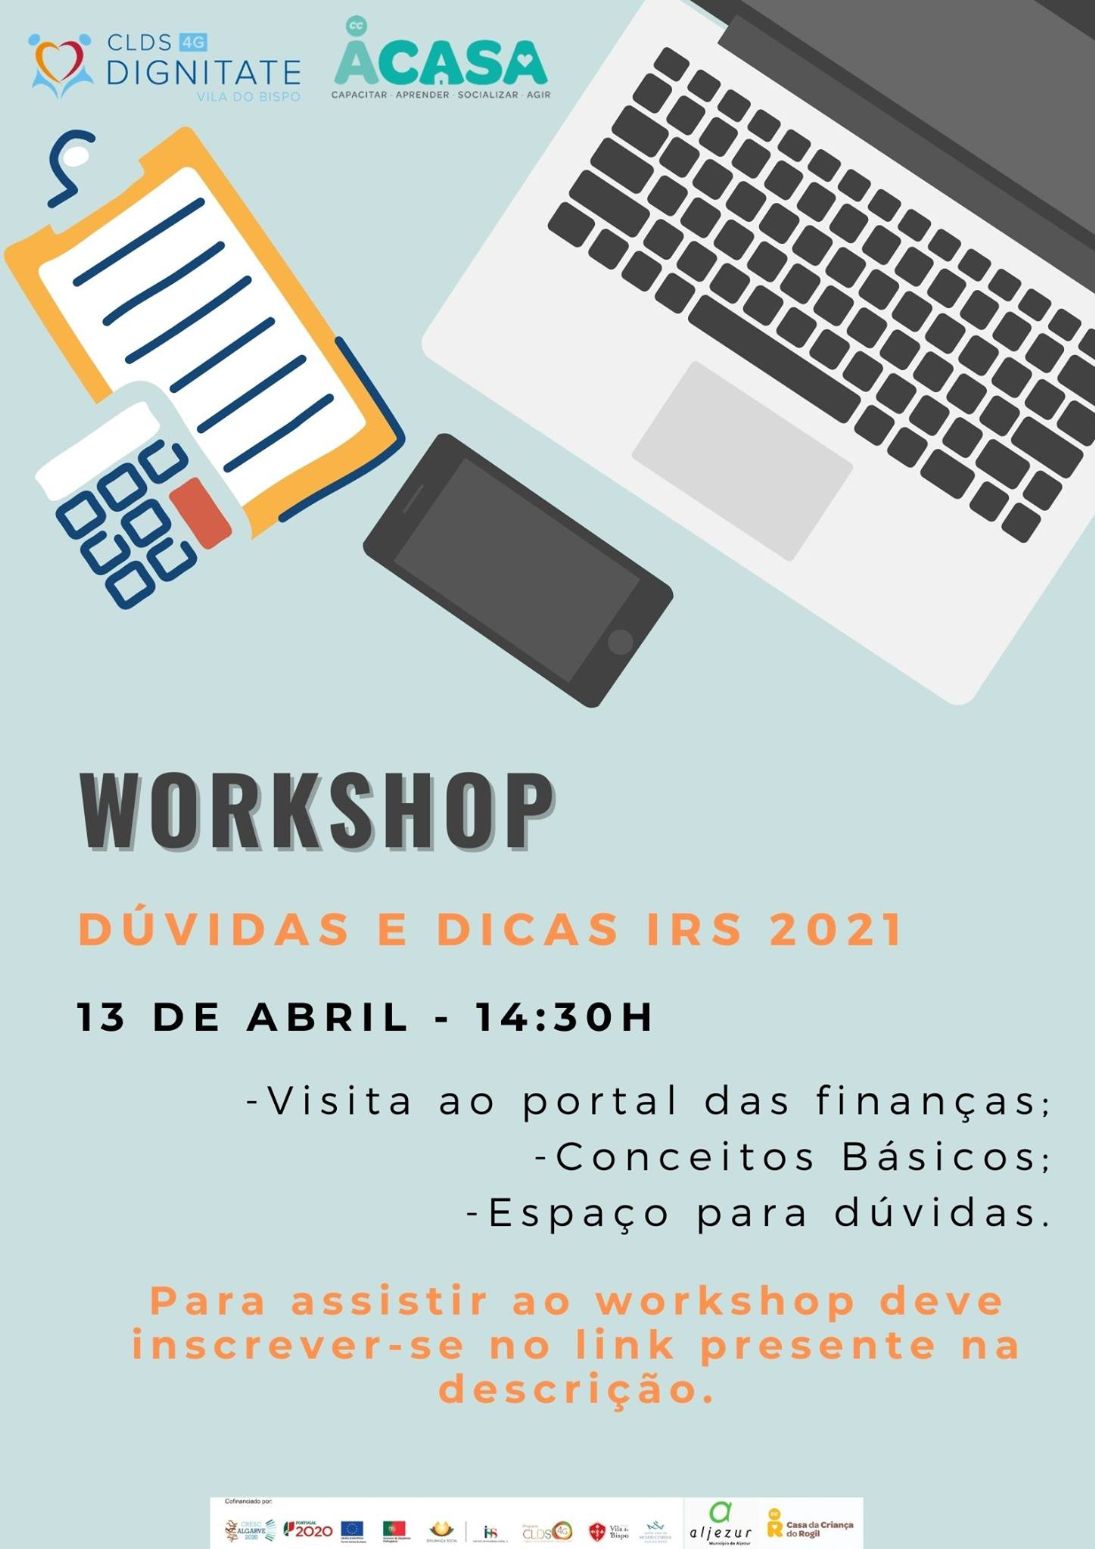 Workshop "Dúvidas e Dicas IRS 2021": Saiba tudo